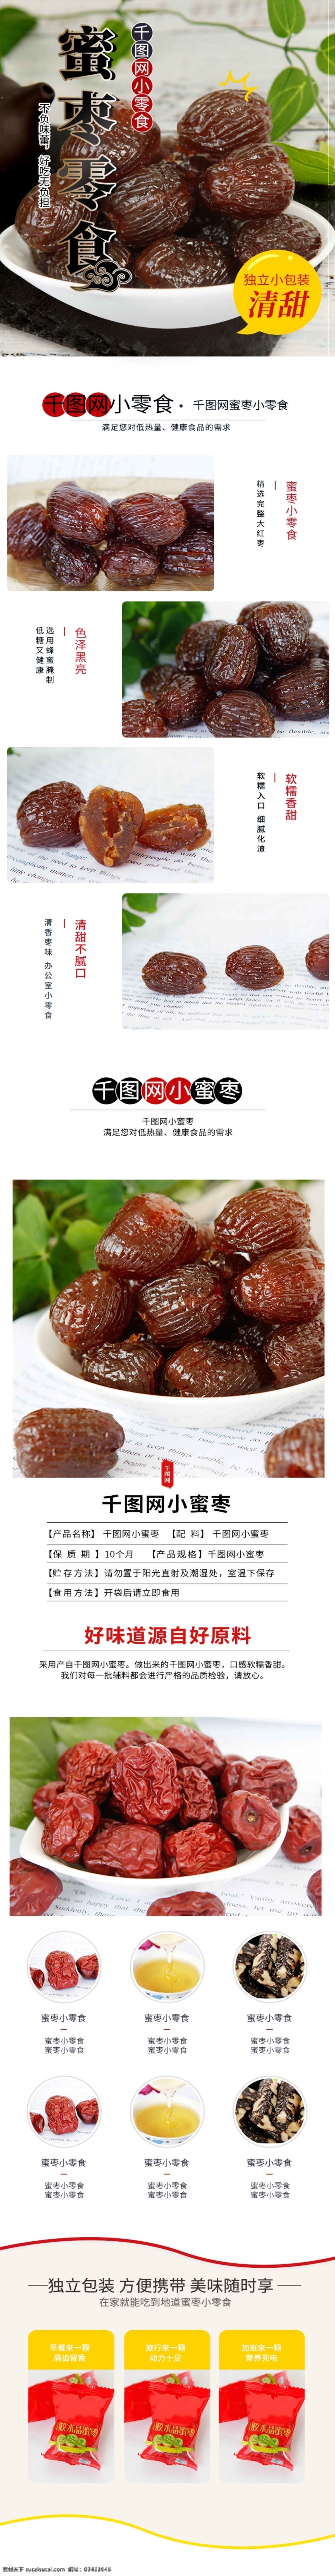 淘宝 天猫 食品 零食 详情 模板 中国 风 蜜枣 黑色 中国风 红枣 零食详情模板